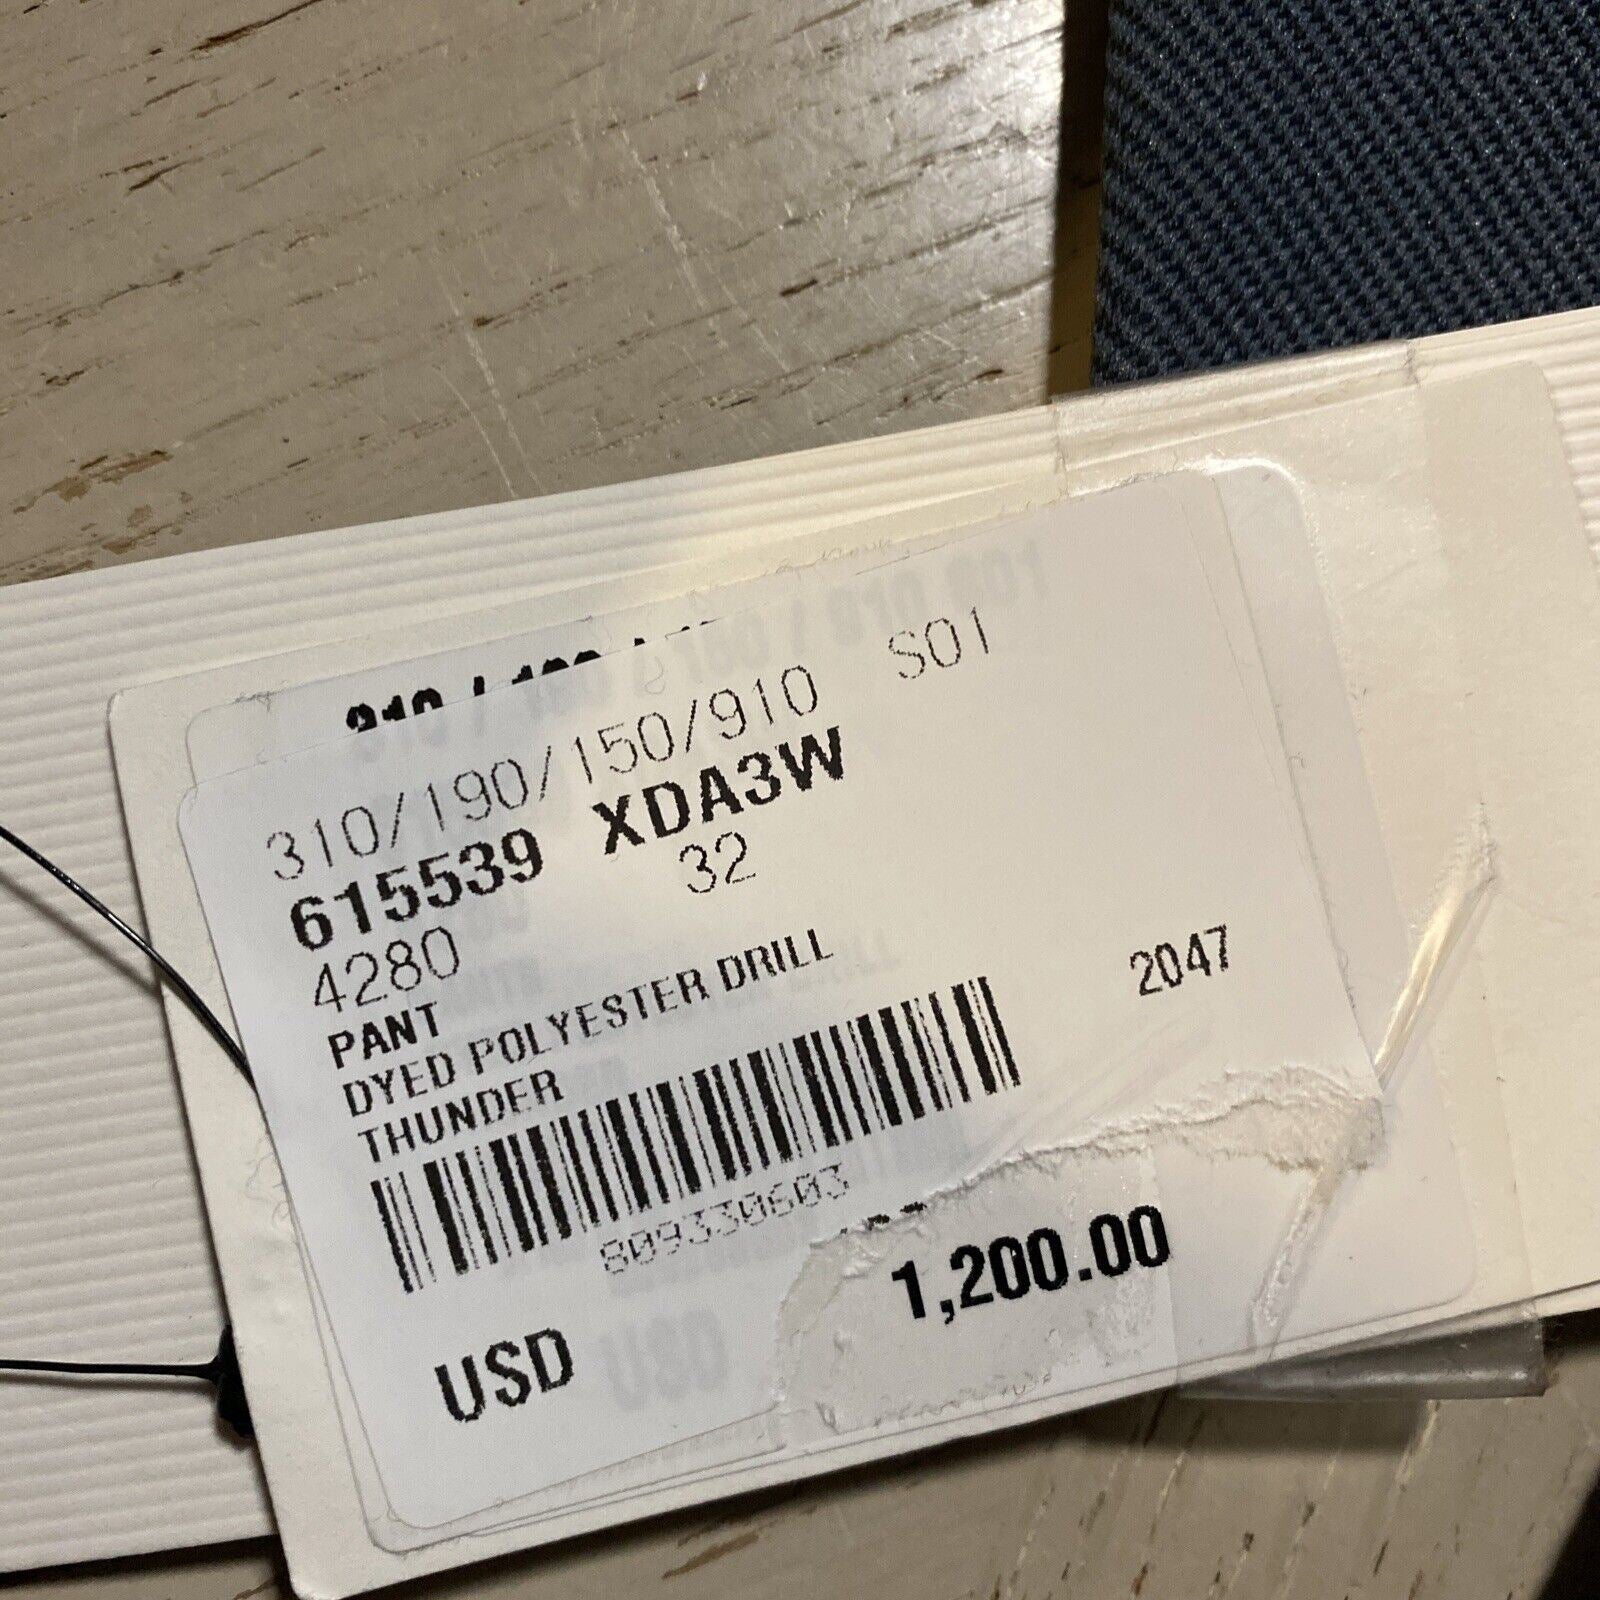 Мужские брюки Gucci из окрашенного полиэстера, синие, NWT, 1200 долларов США, 32 США (48 евро)